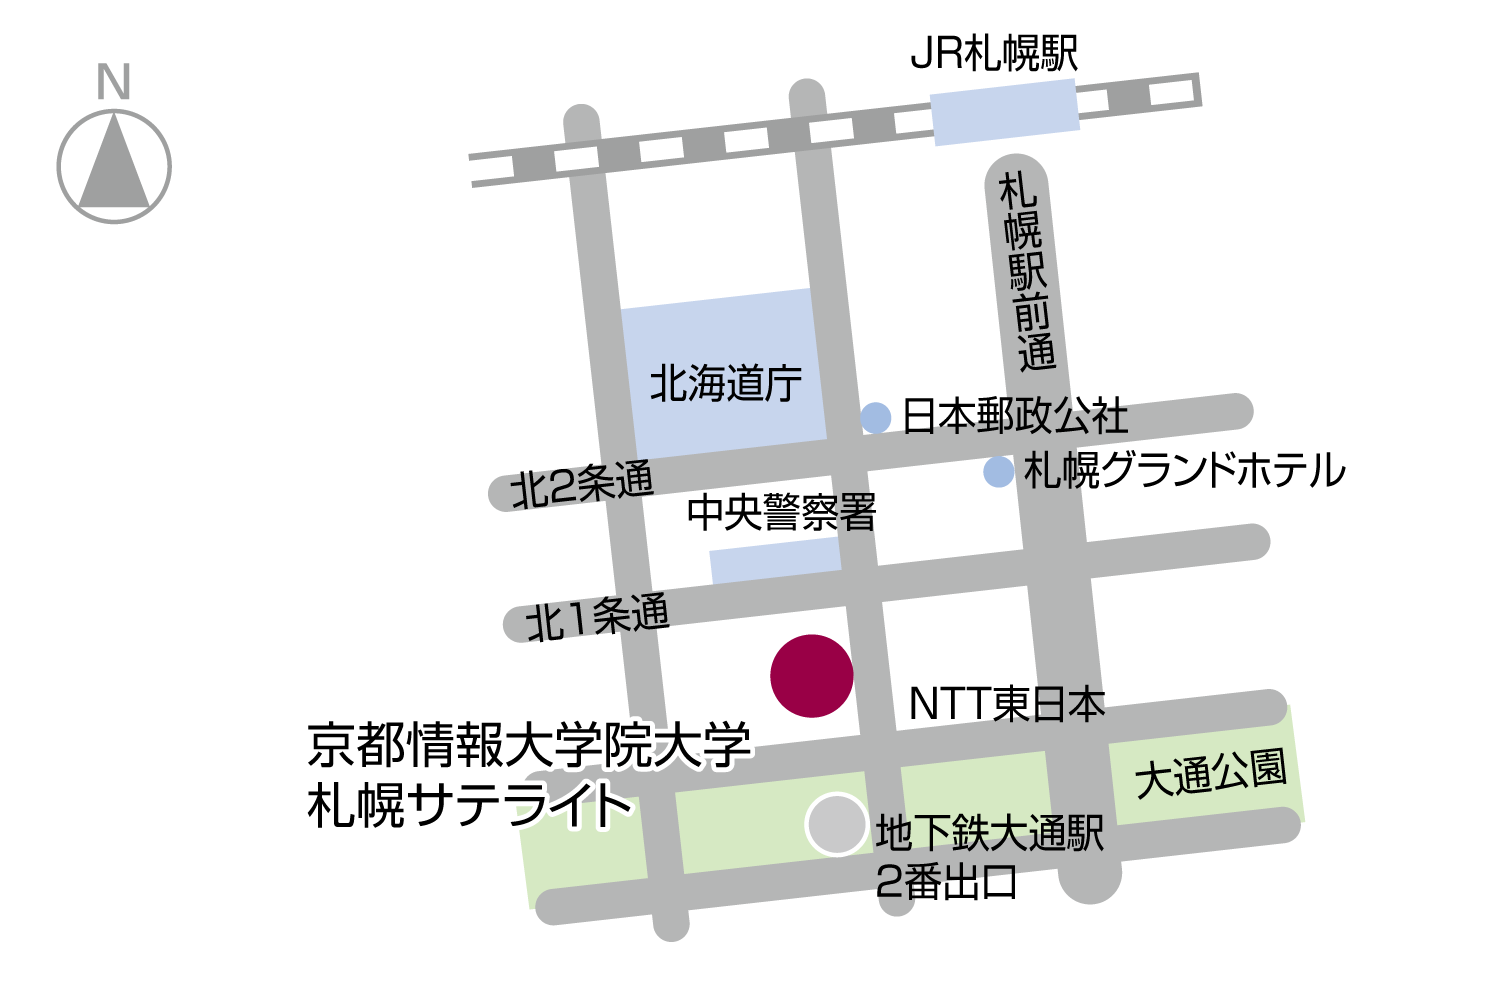 Sapporo Satellite Campus Maps